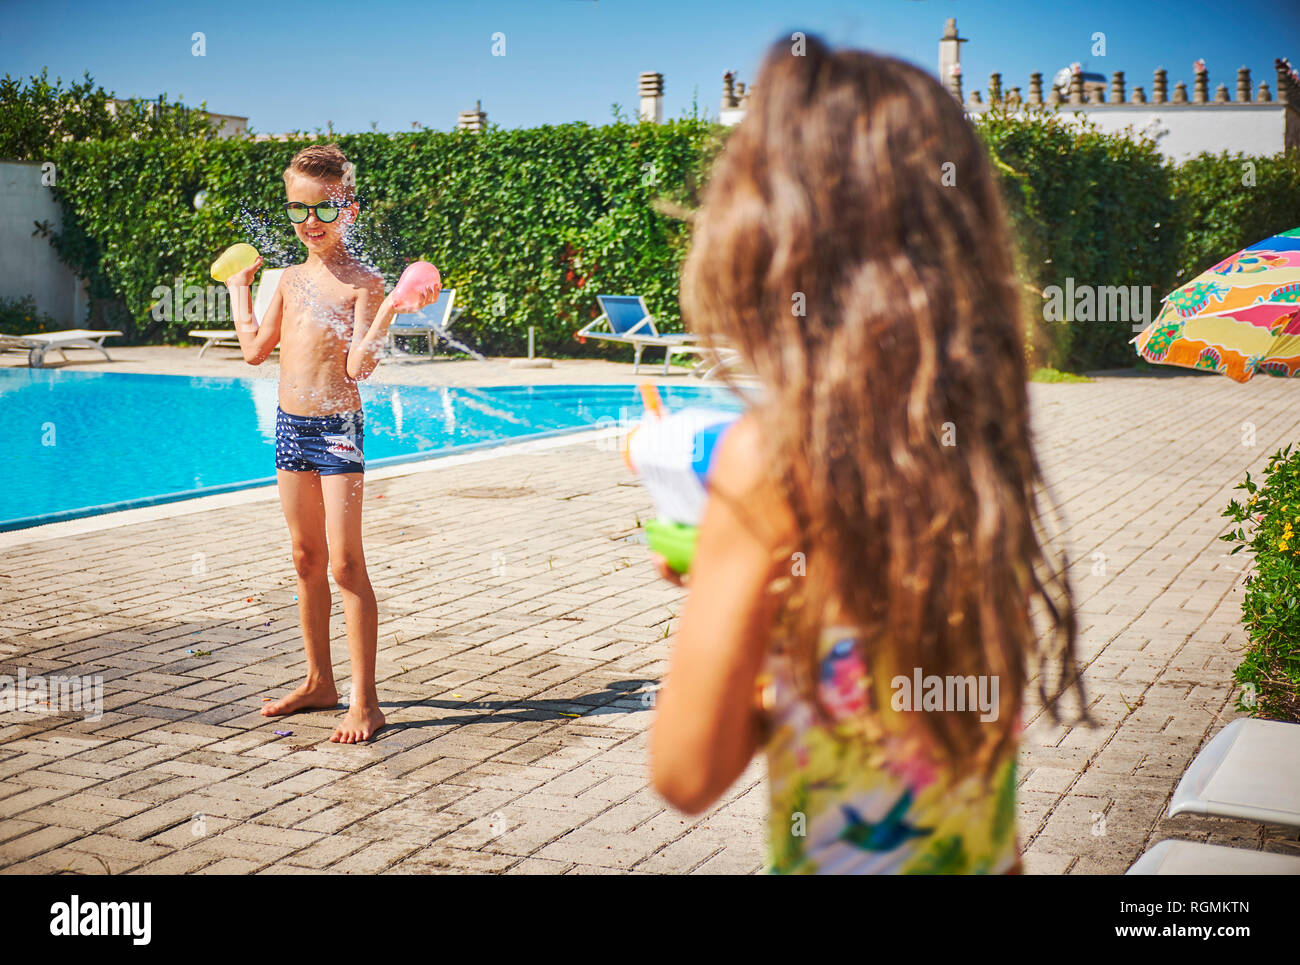 Mädchen mit Wasserpistole Spritzer von Boy holding Wasserbomben an der Poolbar Stockfoto